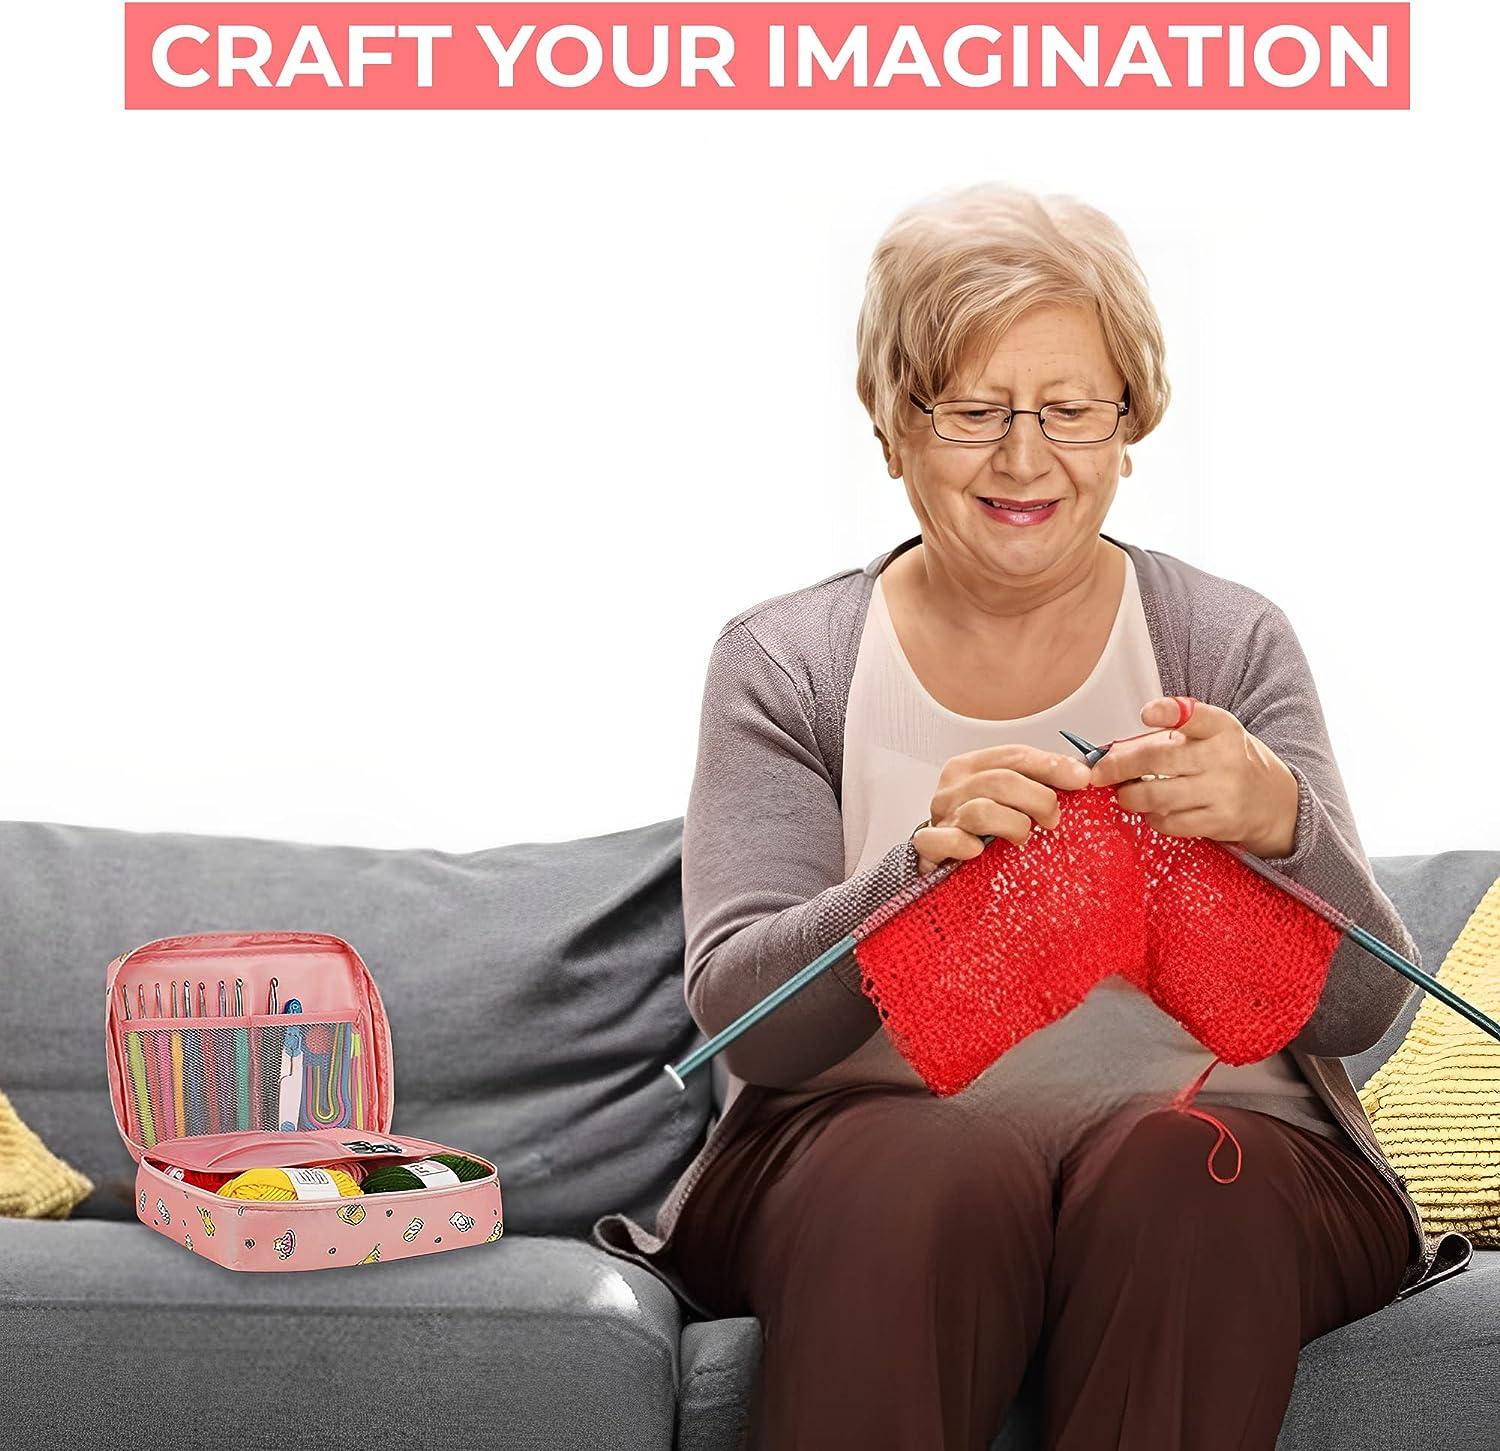 for Beginners – Crochet Starter Kit - Crocheting kit Includes Crochet Hook,  Crocheting Needles & Yarn Balls with Portable Case, Crochet Set, Crosha